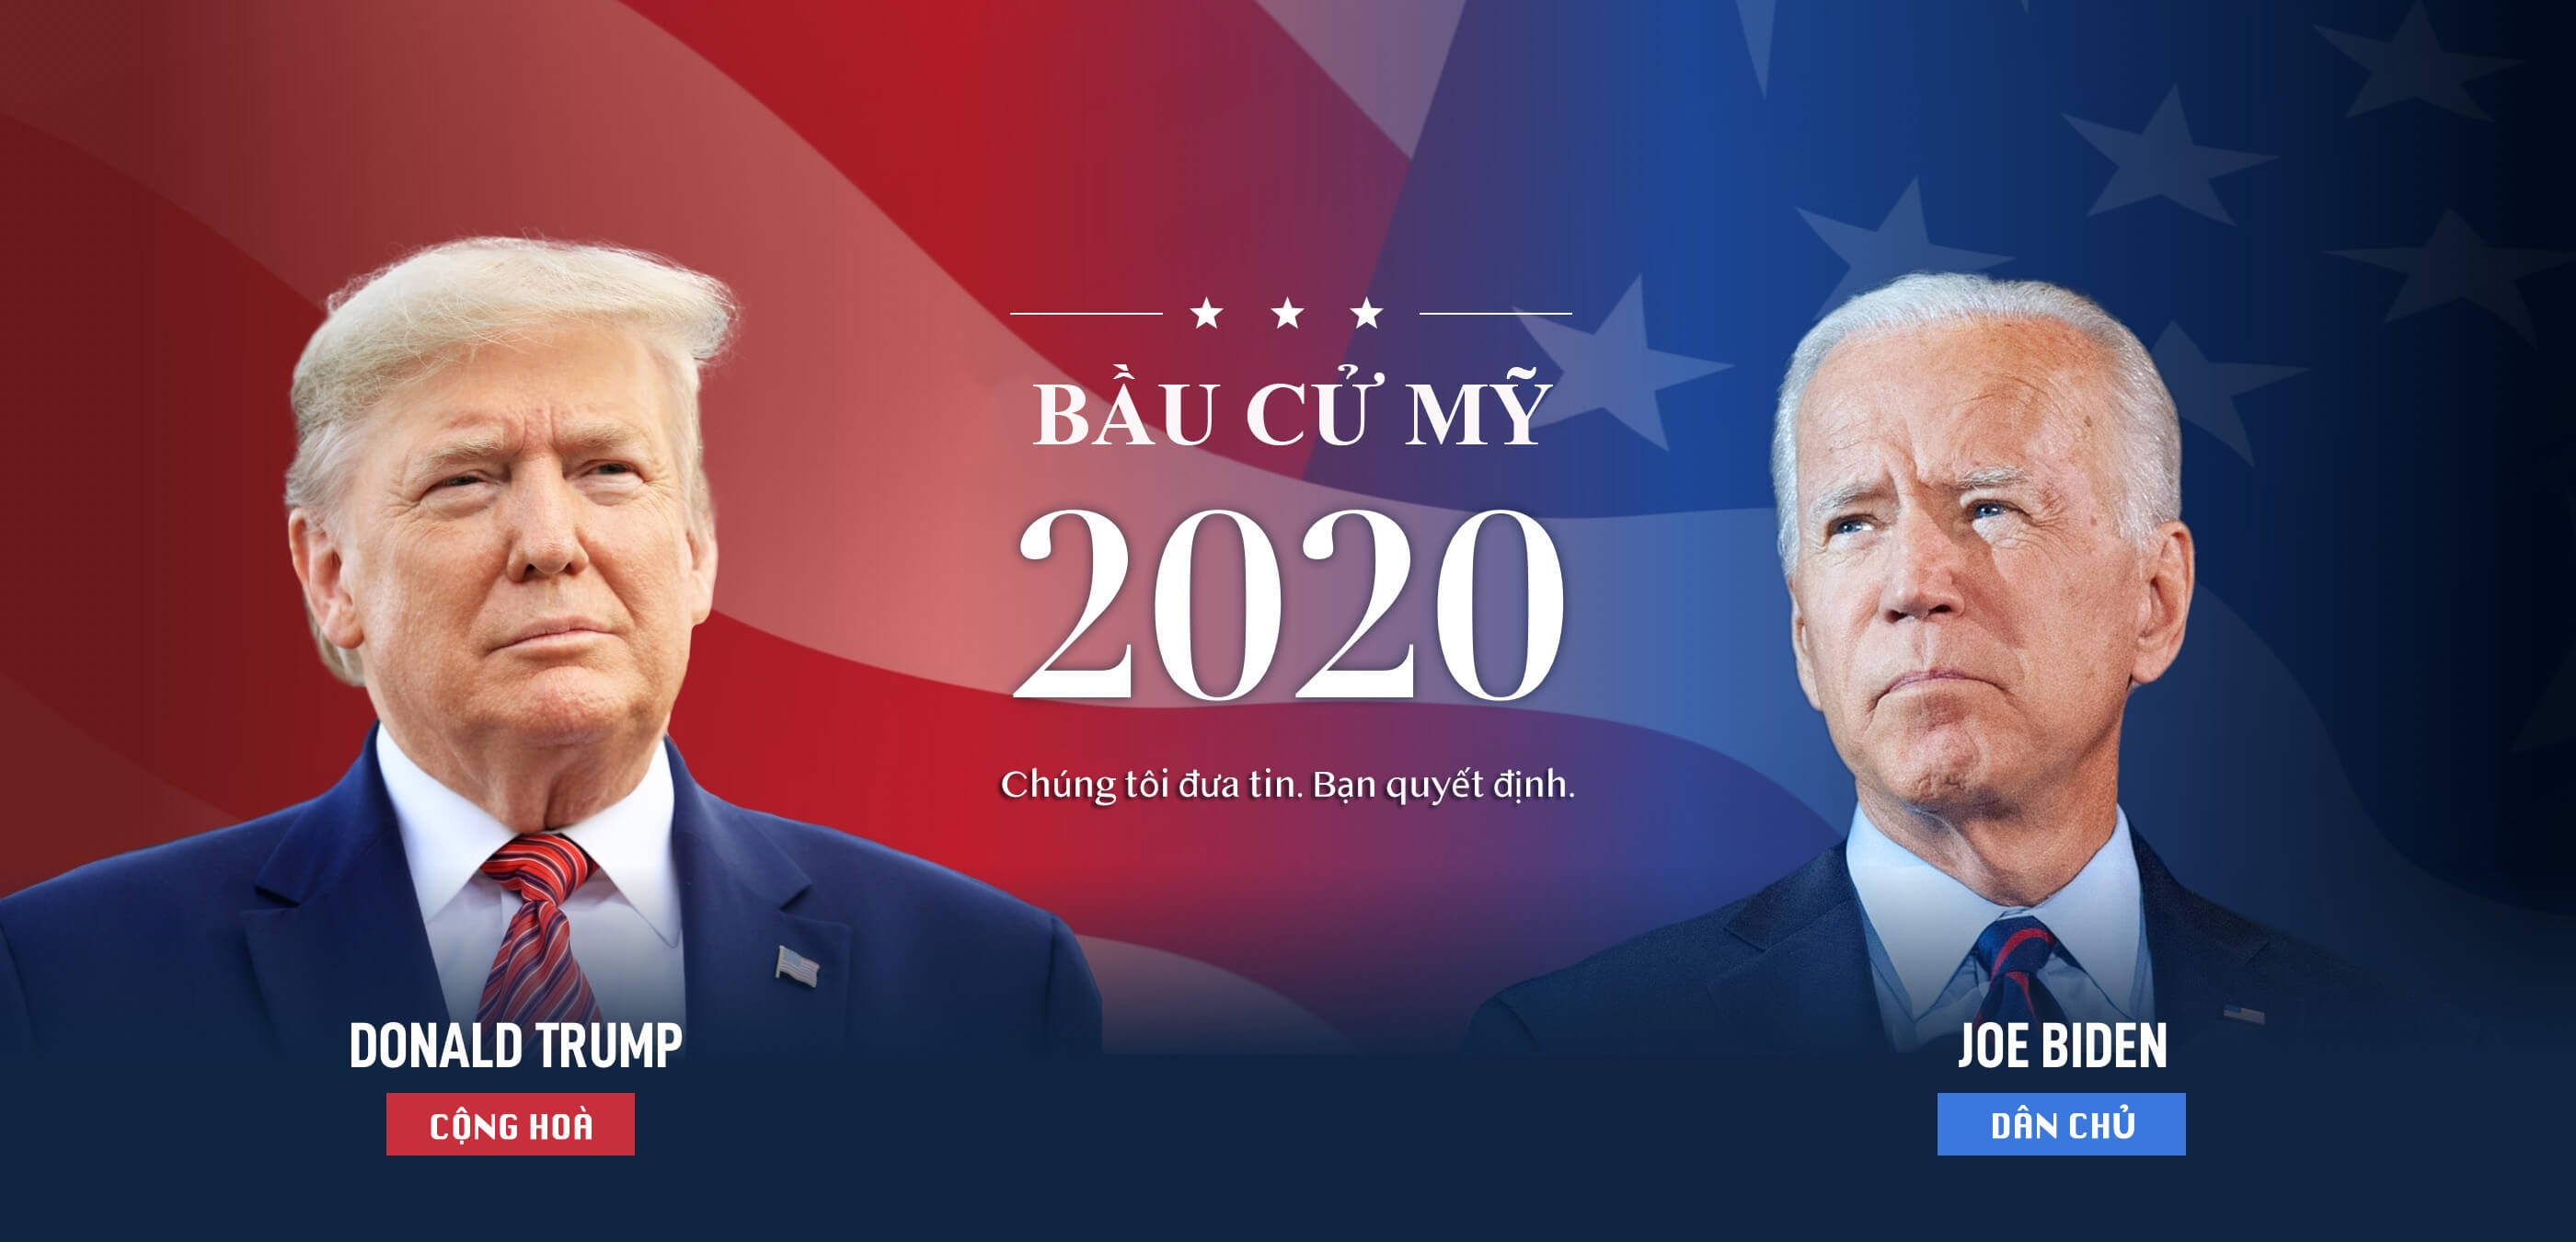 Bầu cử Mỹ 2020 | Epoch Times Tiếng Việt